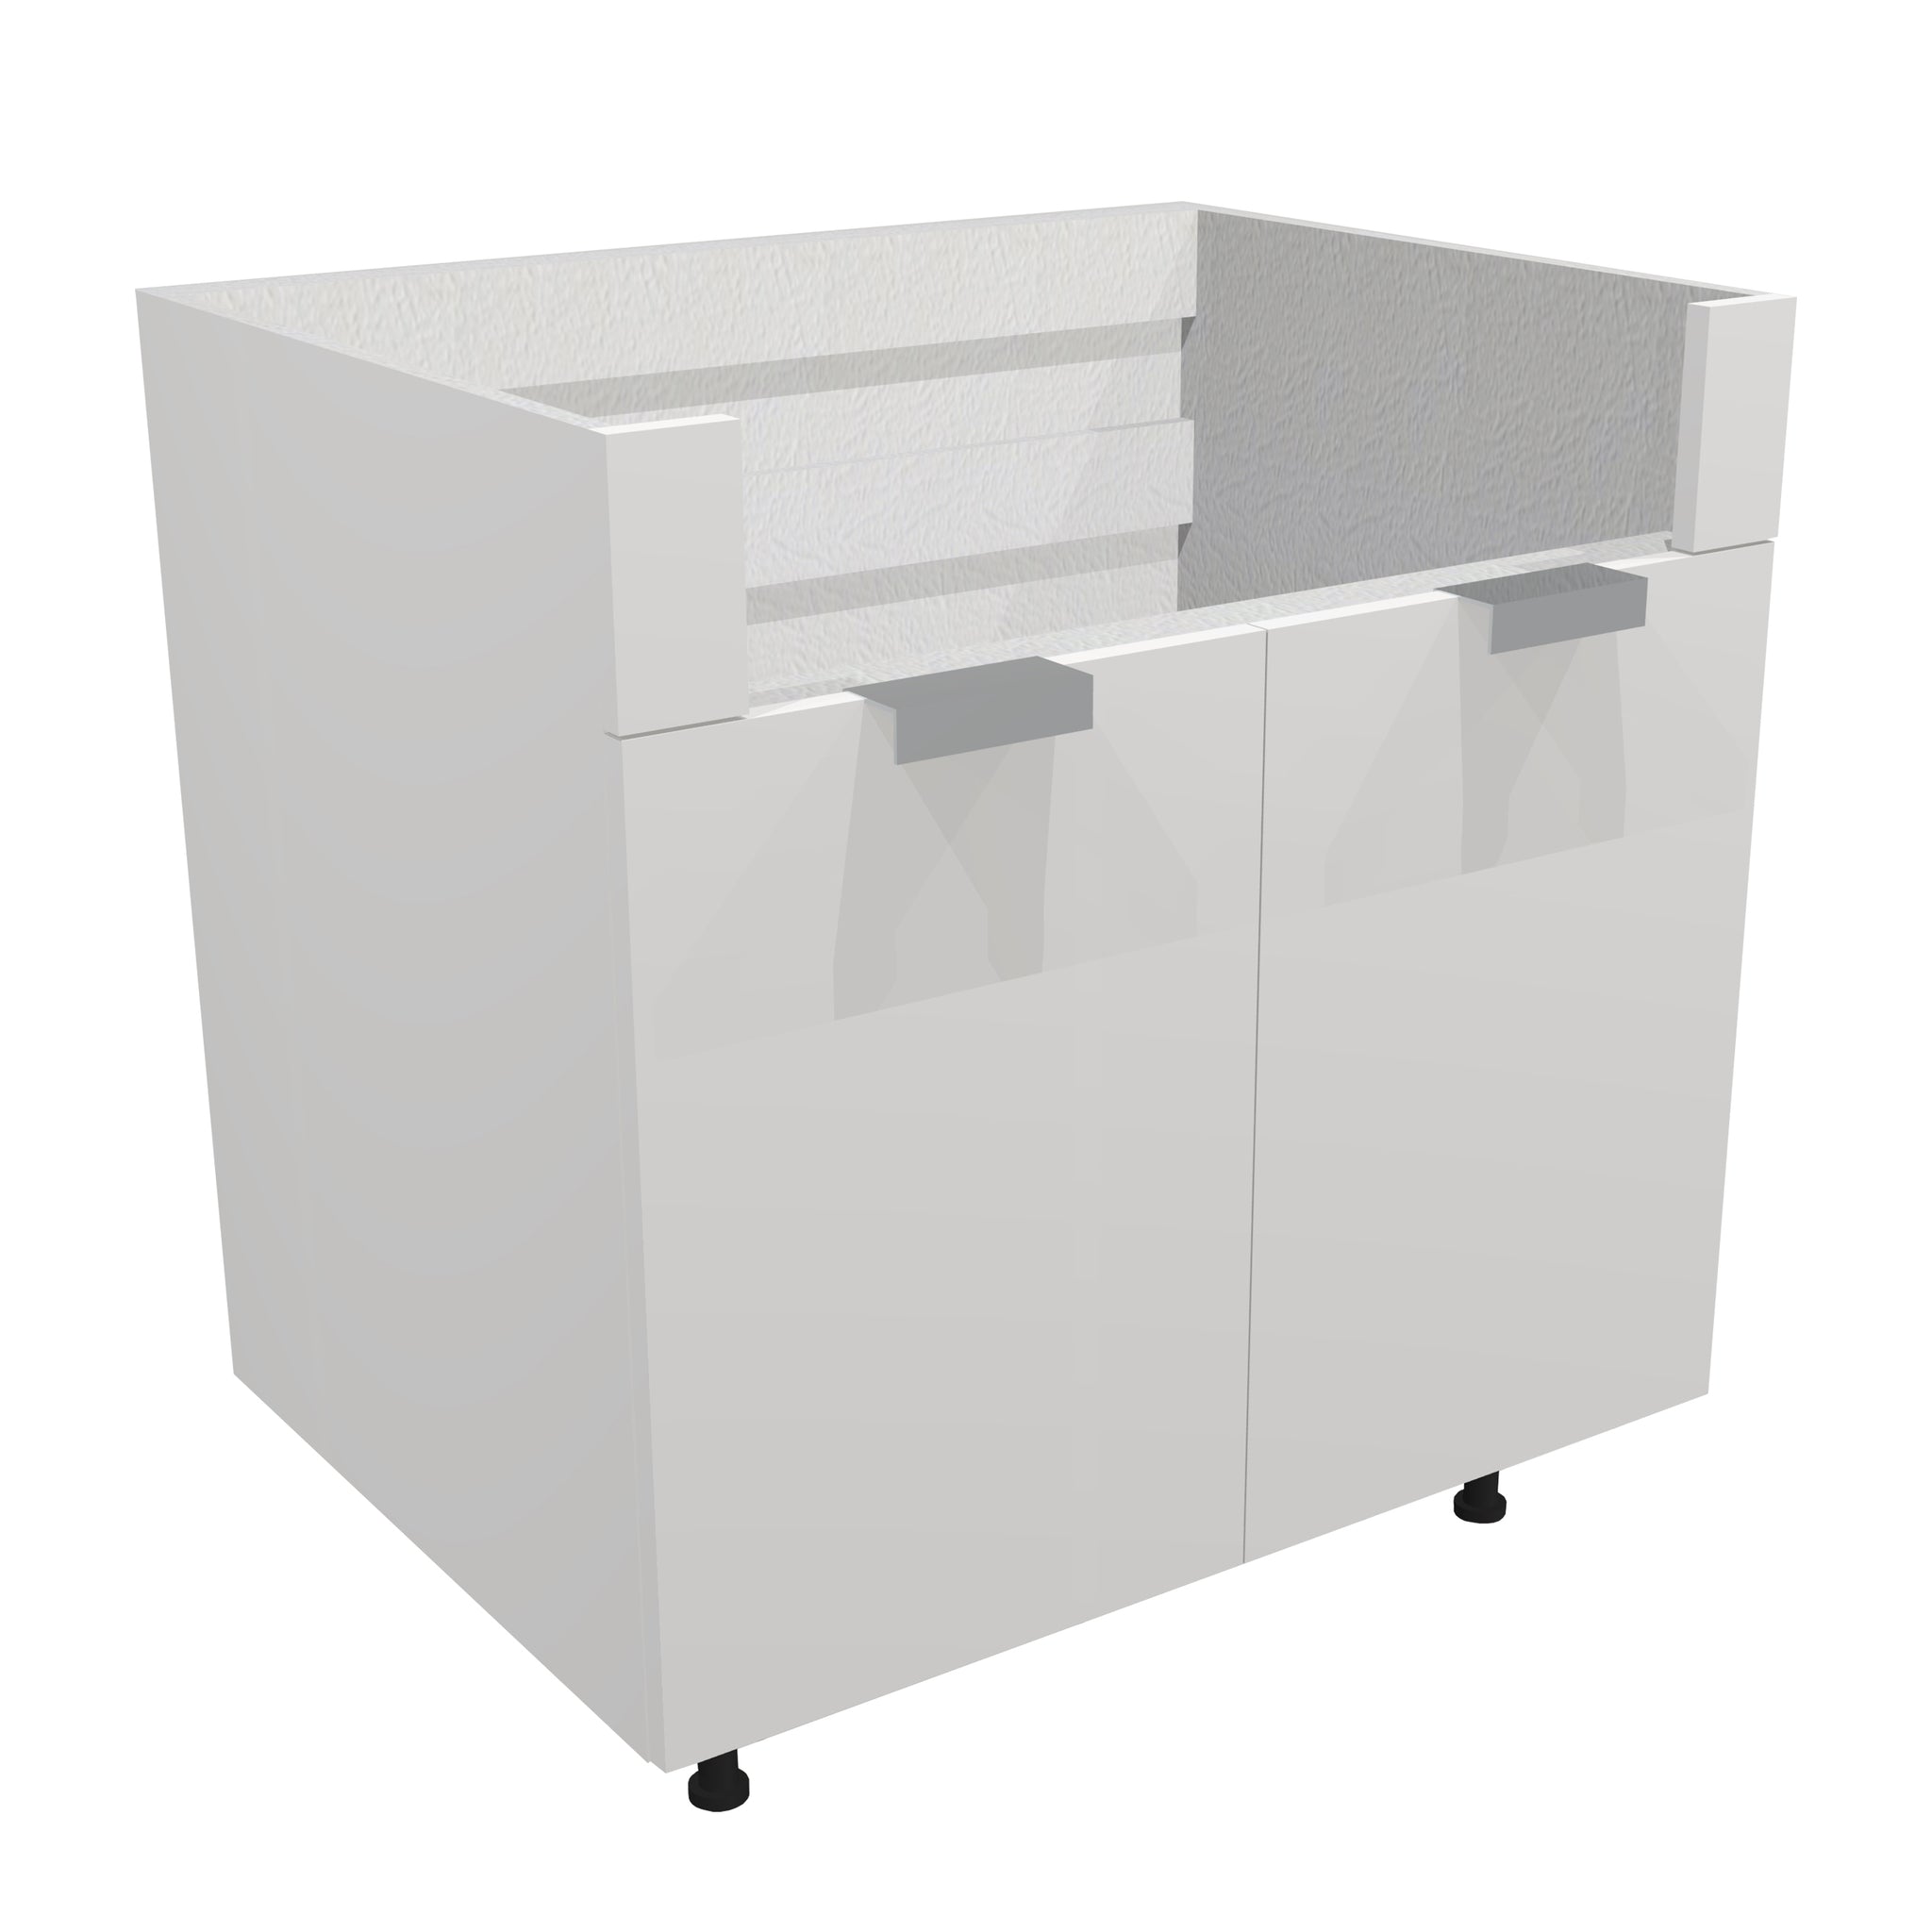 RTA - Glossy White - Farm Sink Base Cabinet | 33"W x 34.5"H x 24"D